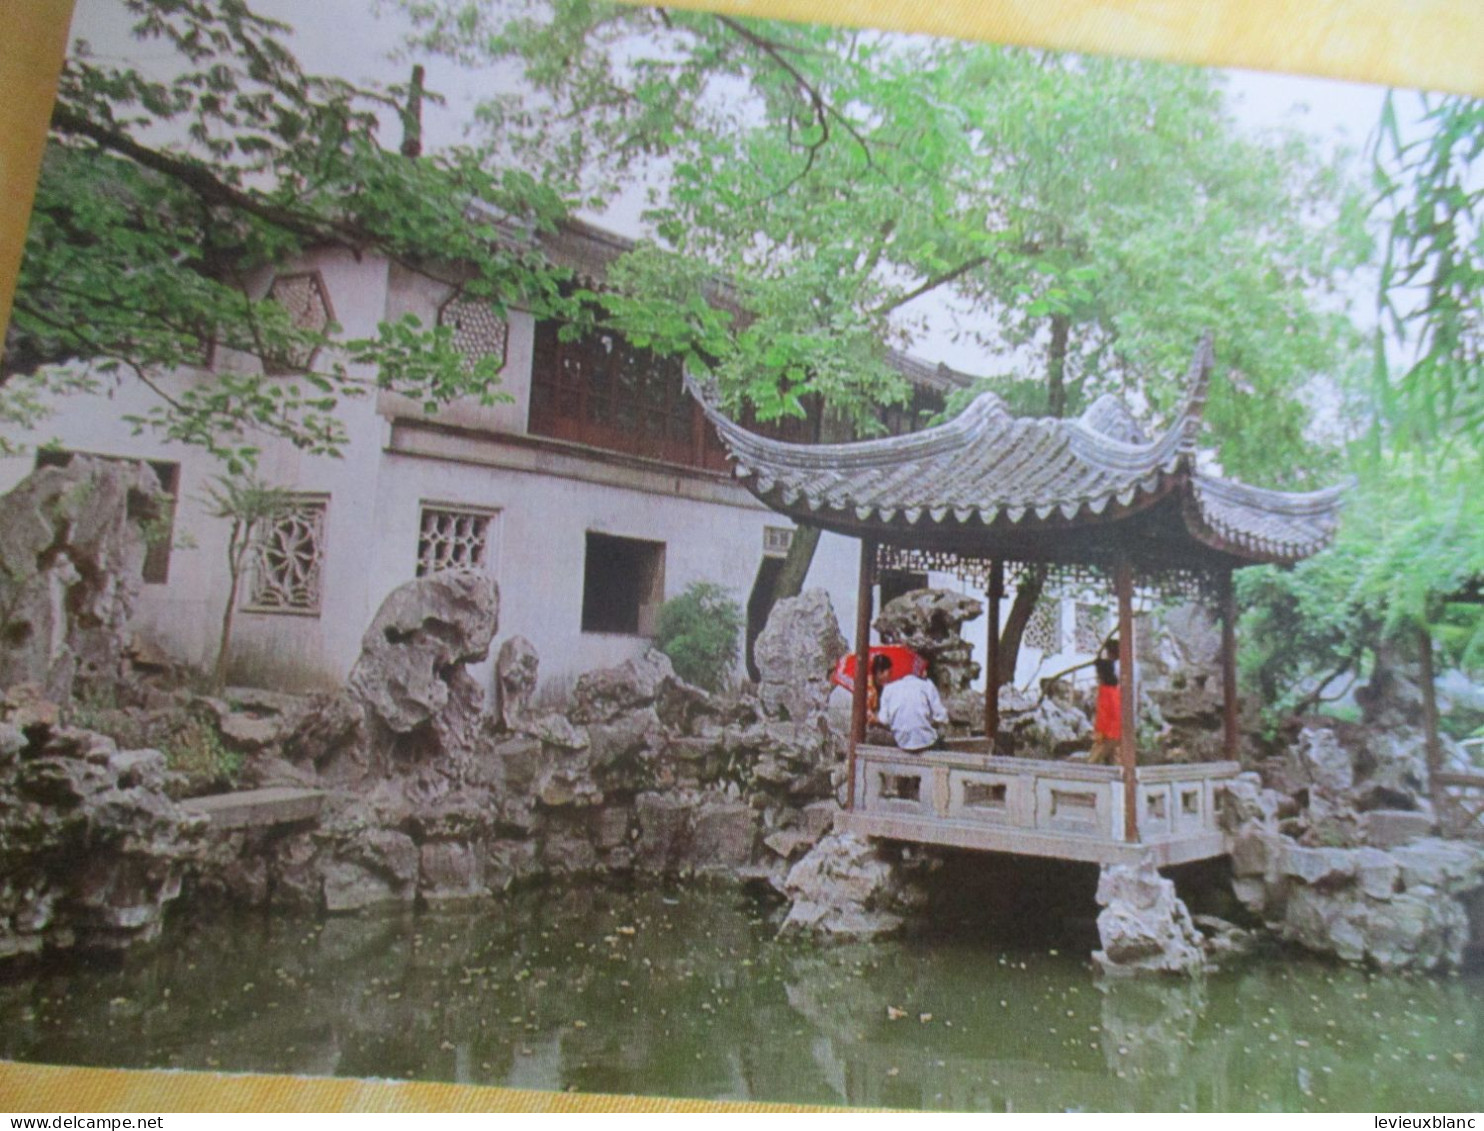 12 cartes postales anciennes/SUZHOU Gardens/JIANSOU /  République Populaire de Chine / 1982    JAP58